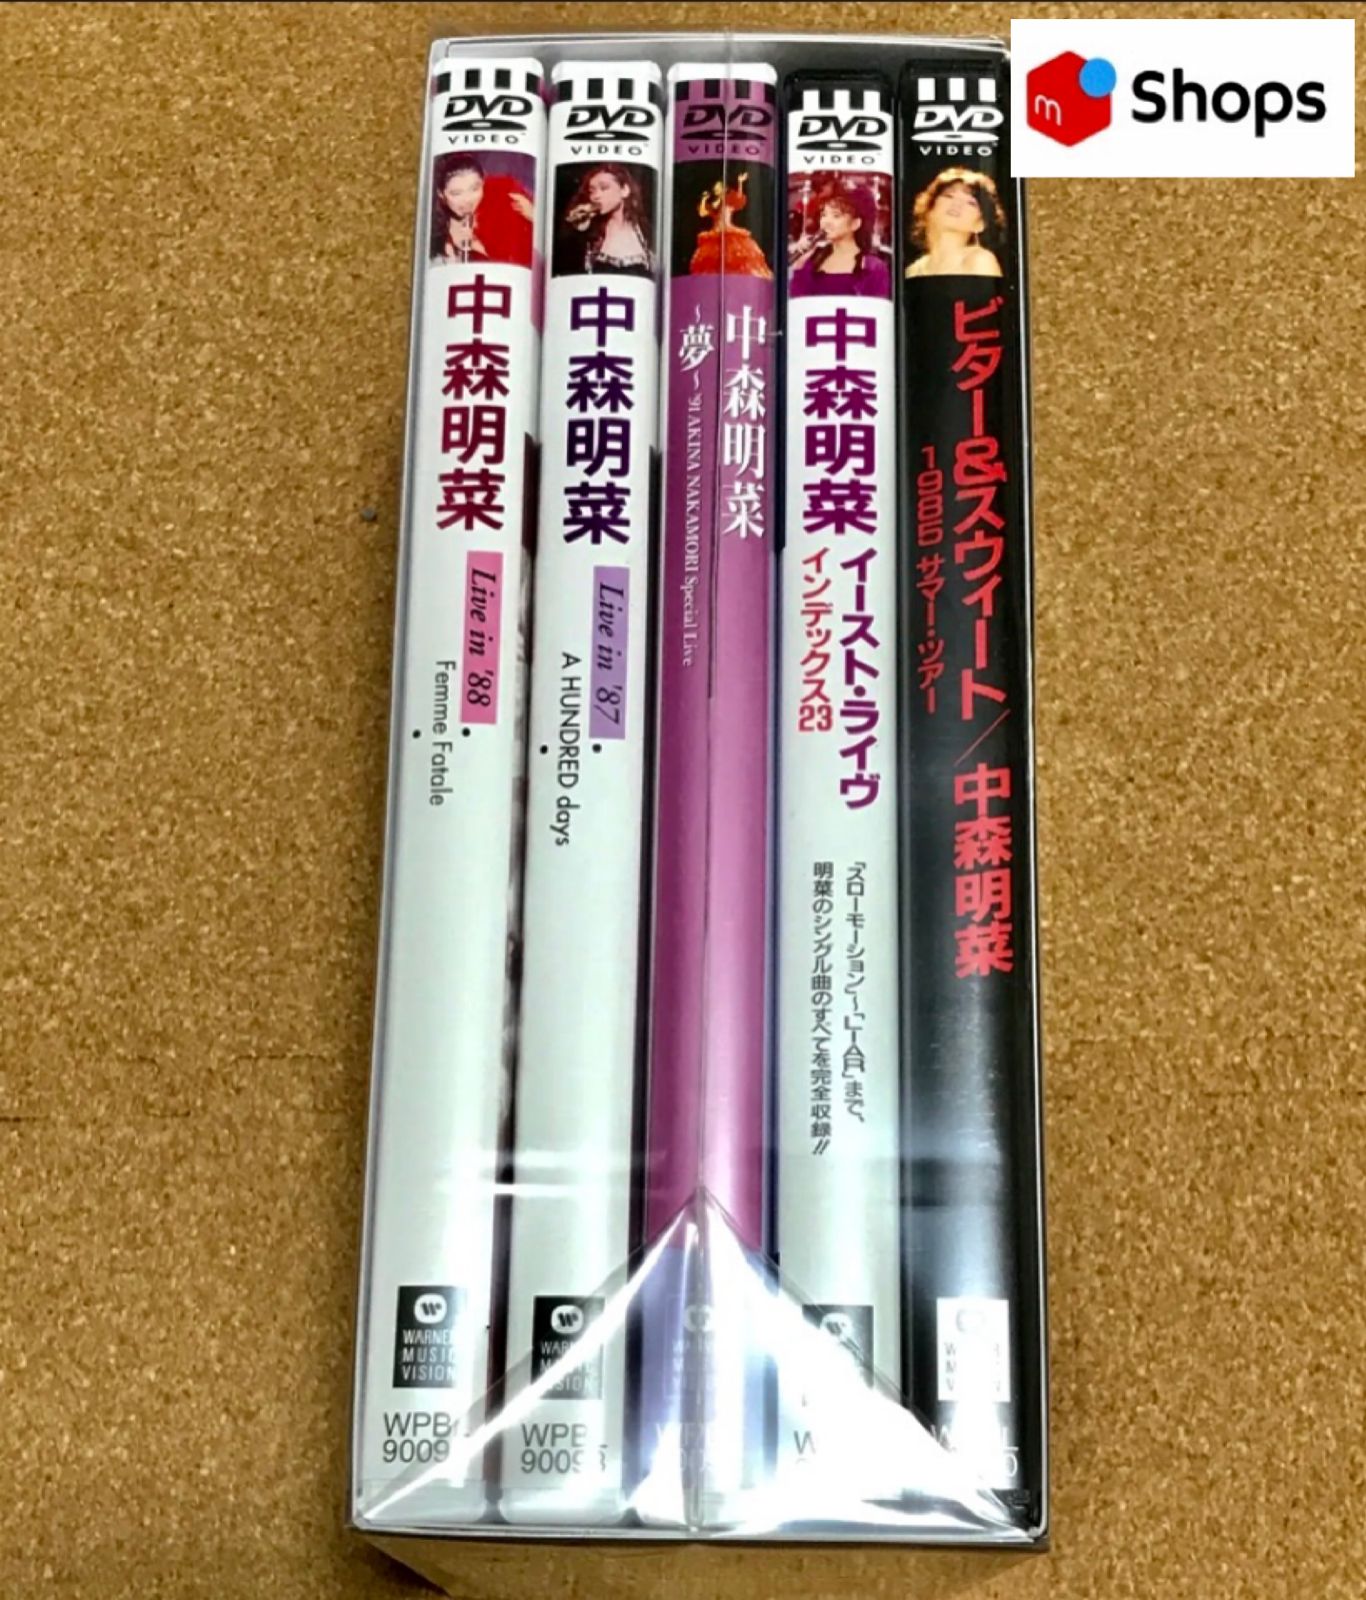 中森明菜 5.1 オーディオリマスター DVDコレクション【新品未開封